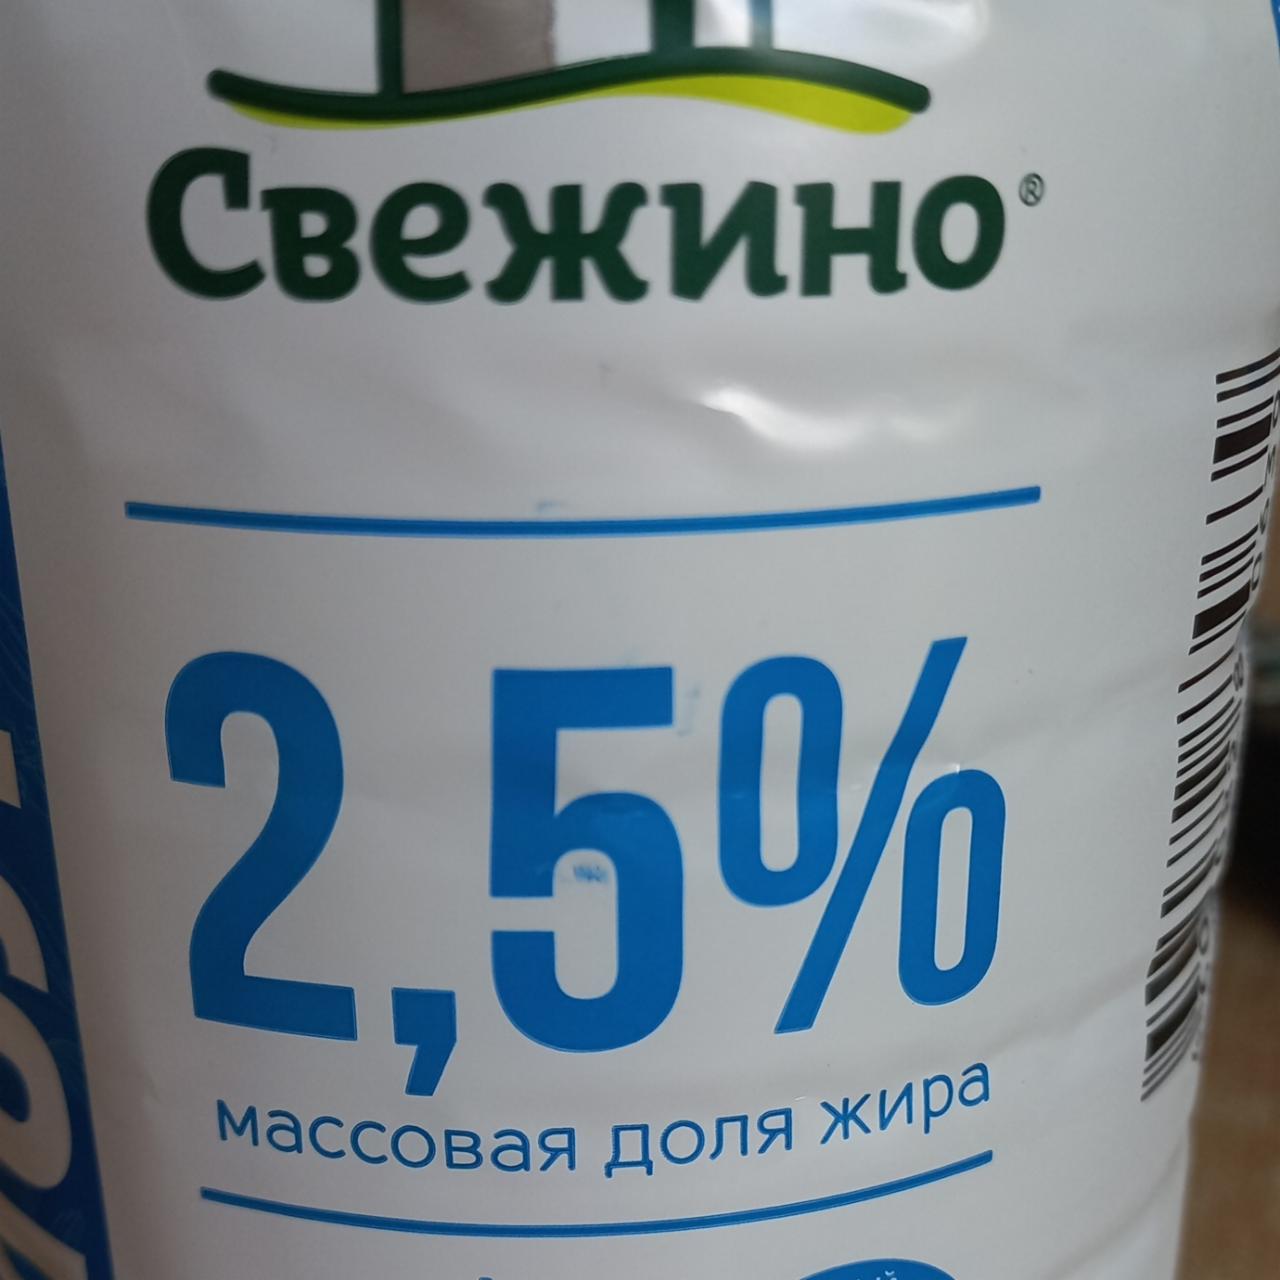 Фото - Молоко 2.5% Свежино